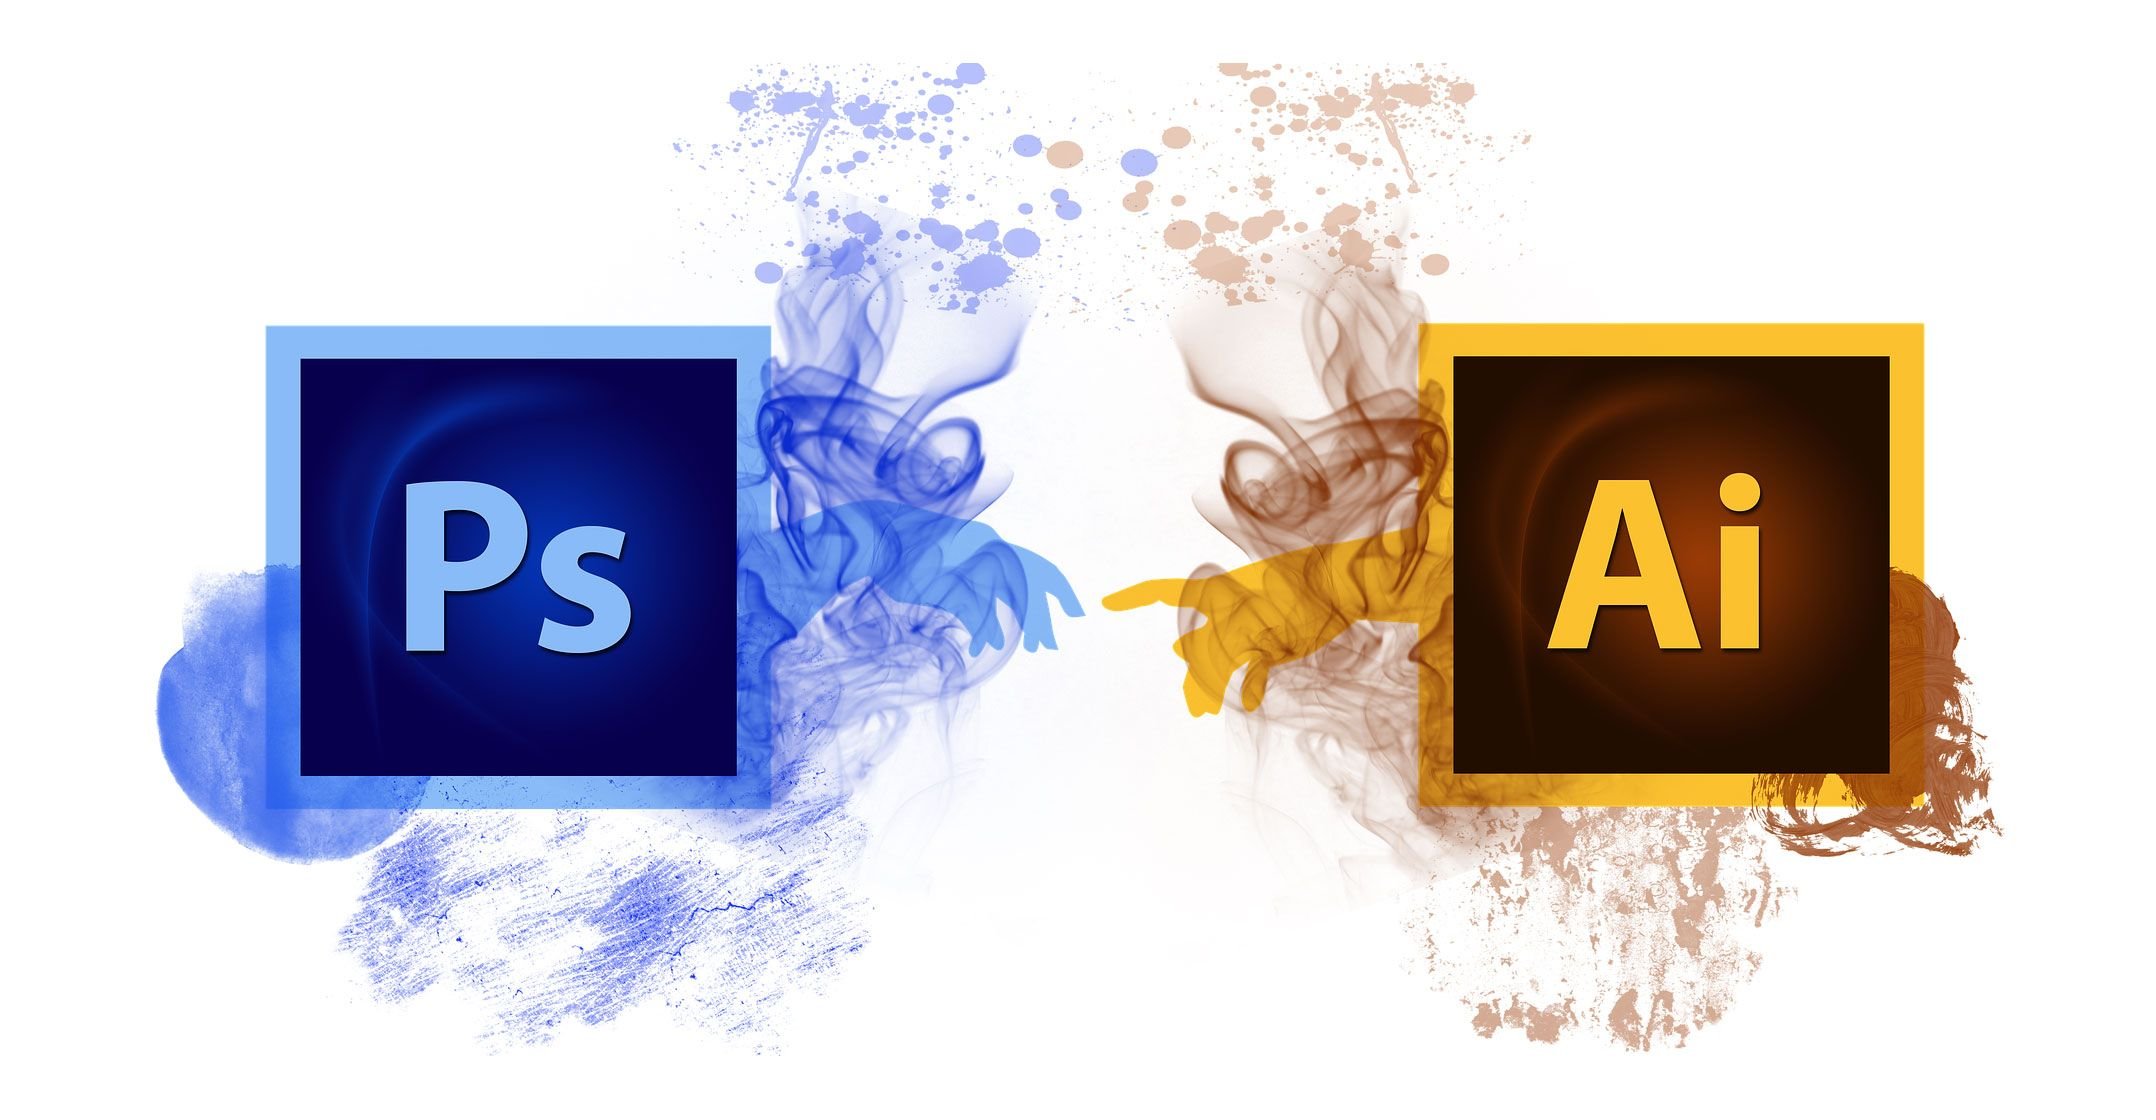 C ai что это. Значок фотошопа. Логотип Photoshop. Adobe Photoshop лого. Значки для фотошопа на прозрачном фоне.